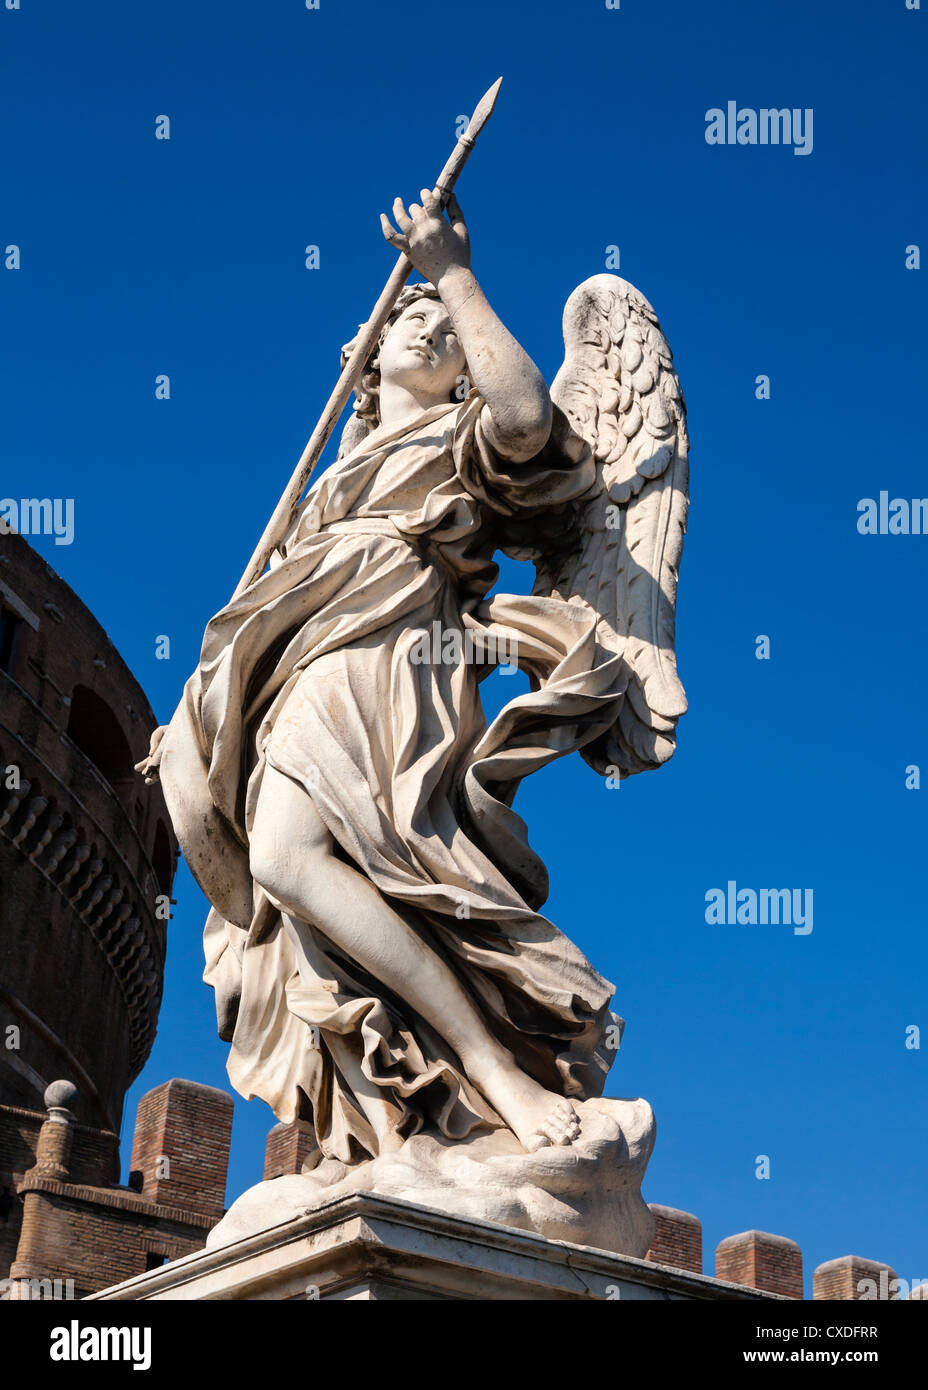 Einer von Berninis Engeln auf der Ponte Sant'Angelo, die Brücke über den Tiber zu Castel Sant'Angelo, Rom, Italien. Stockfoto